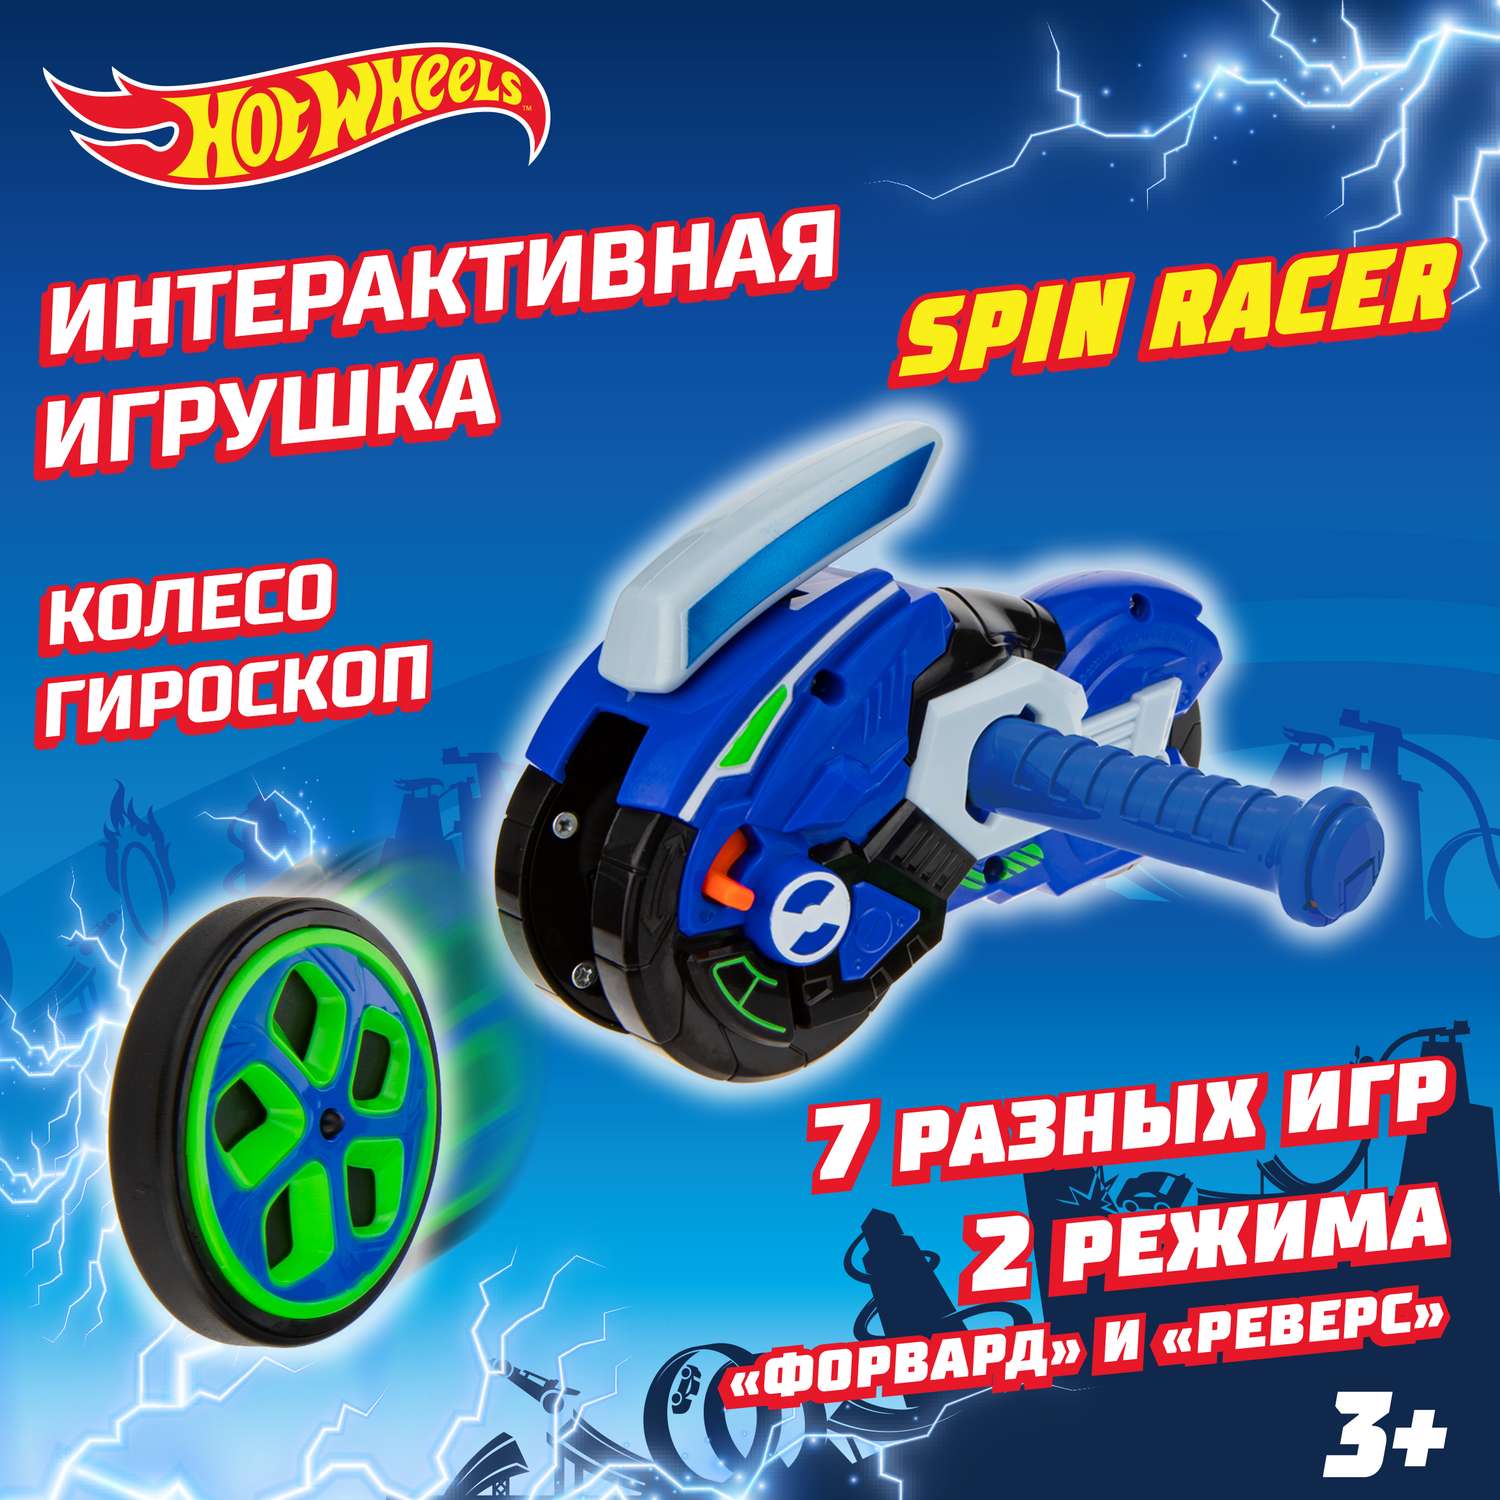 Игровой набор Hot Wheels Spin Racer Синяя Молния игрушечный мотоцикл с колесом-гироскопом Т19373 - фото 1